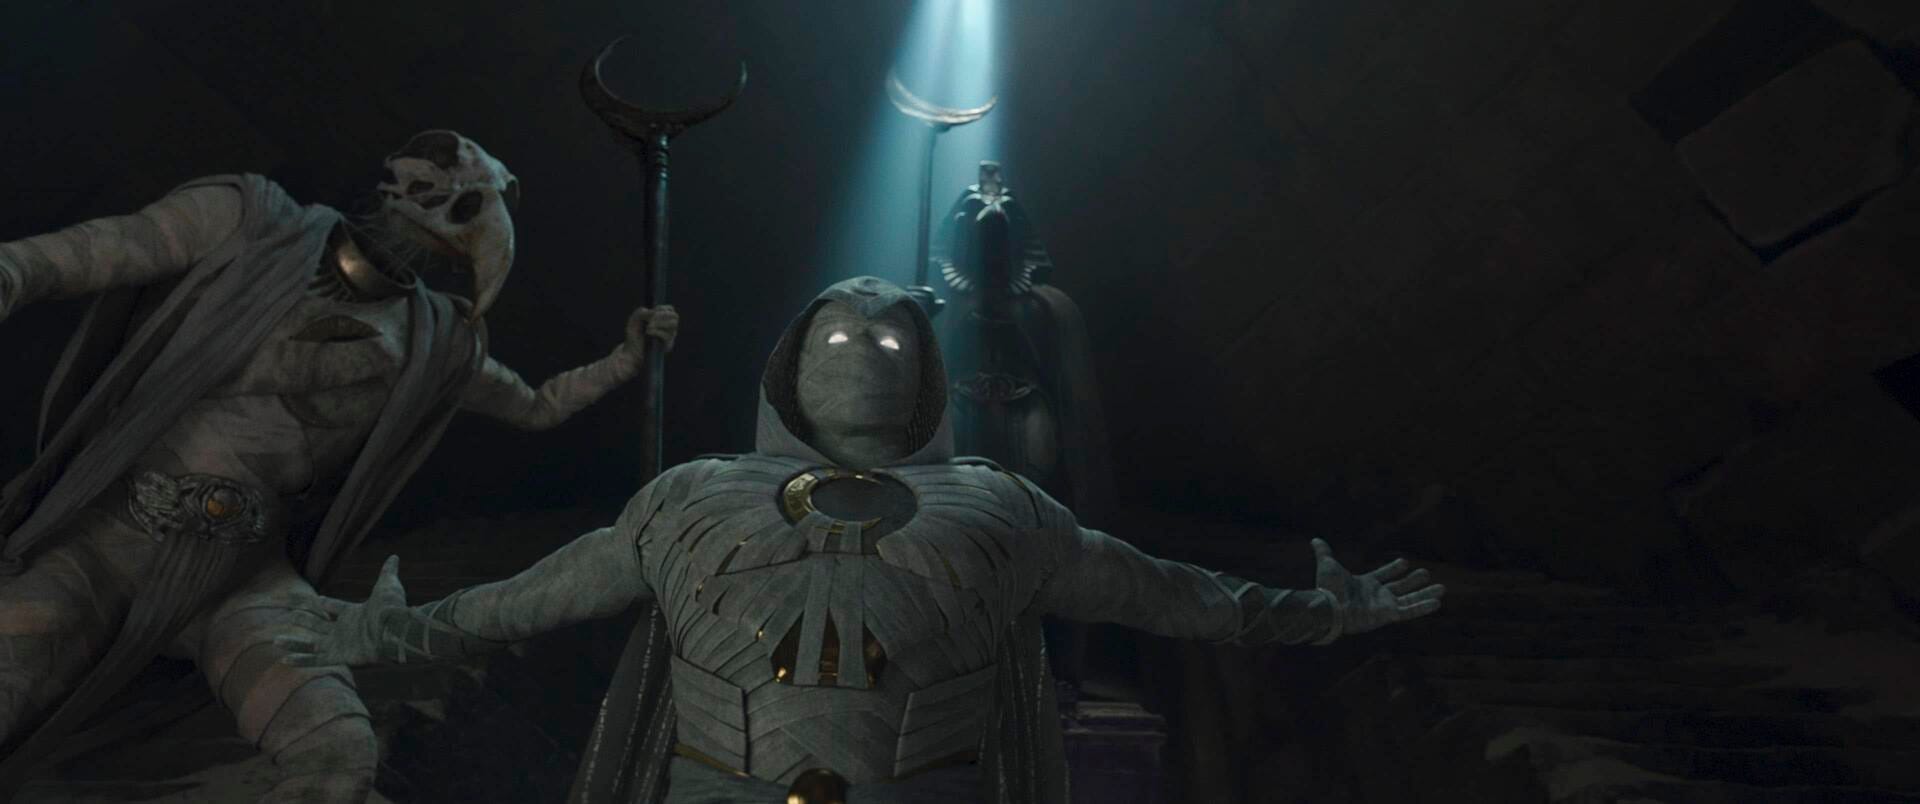 Moon Knight Trailer Introduces Oscar Isaac As Marvel's Newest Superhero